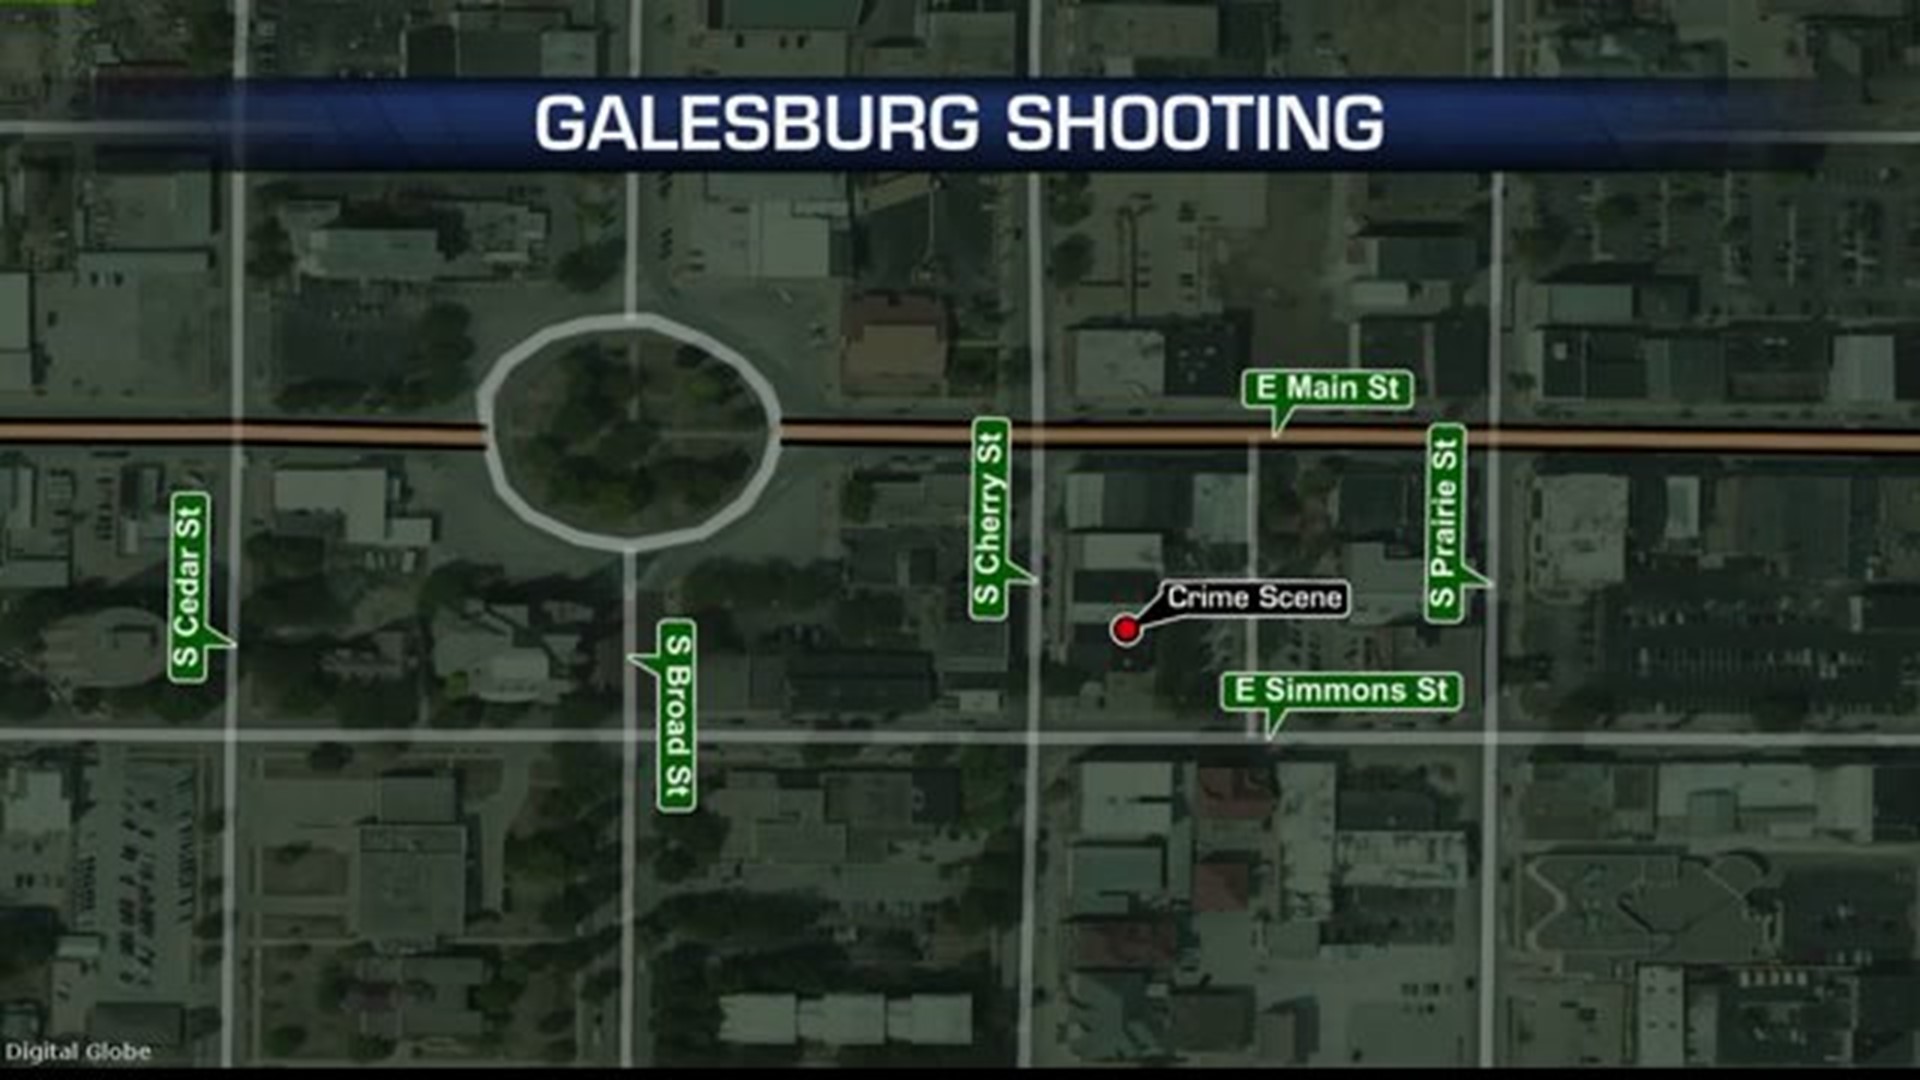 Man injured in Galesburg shooting